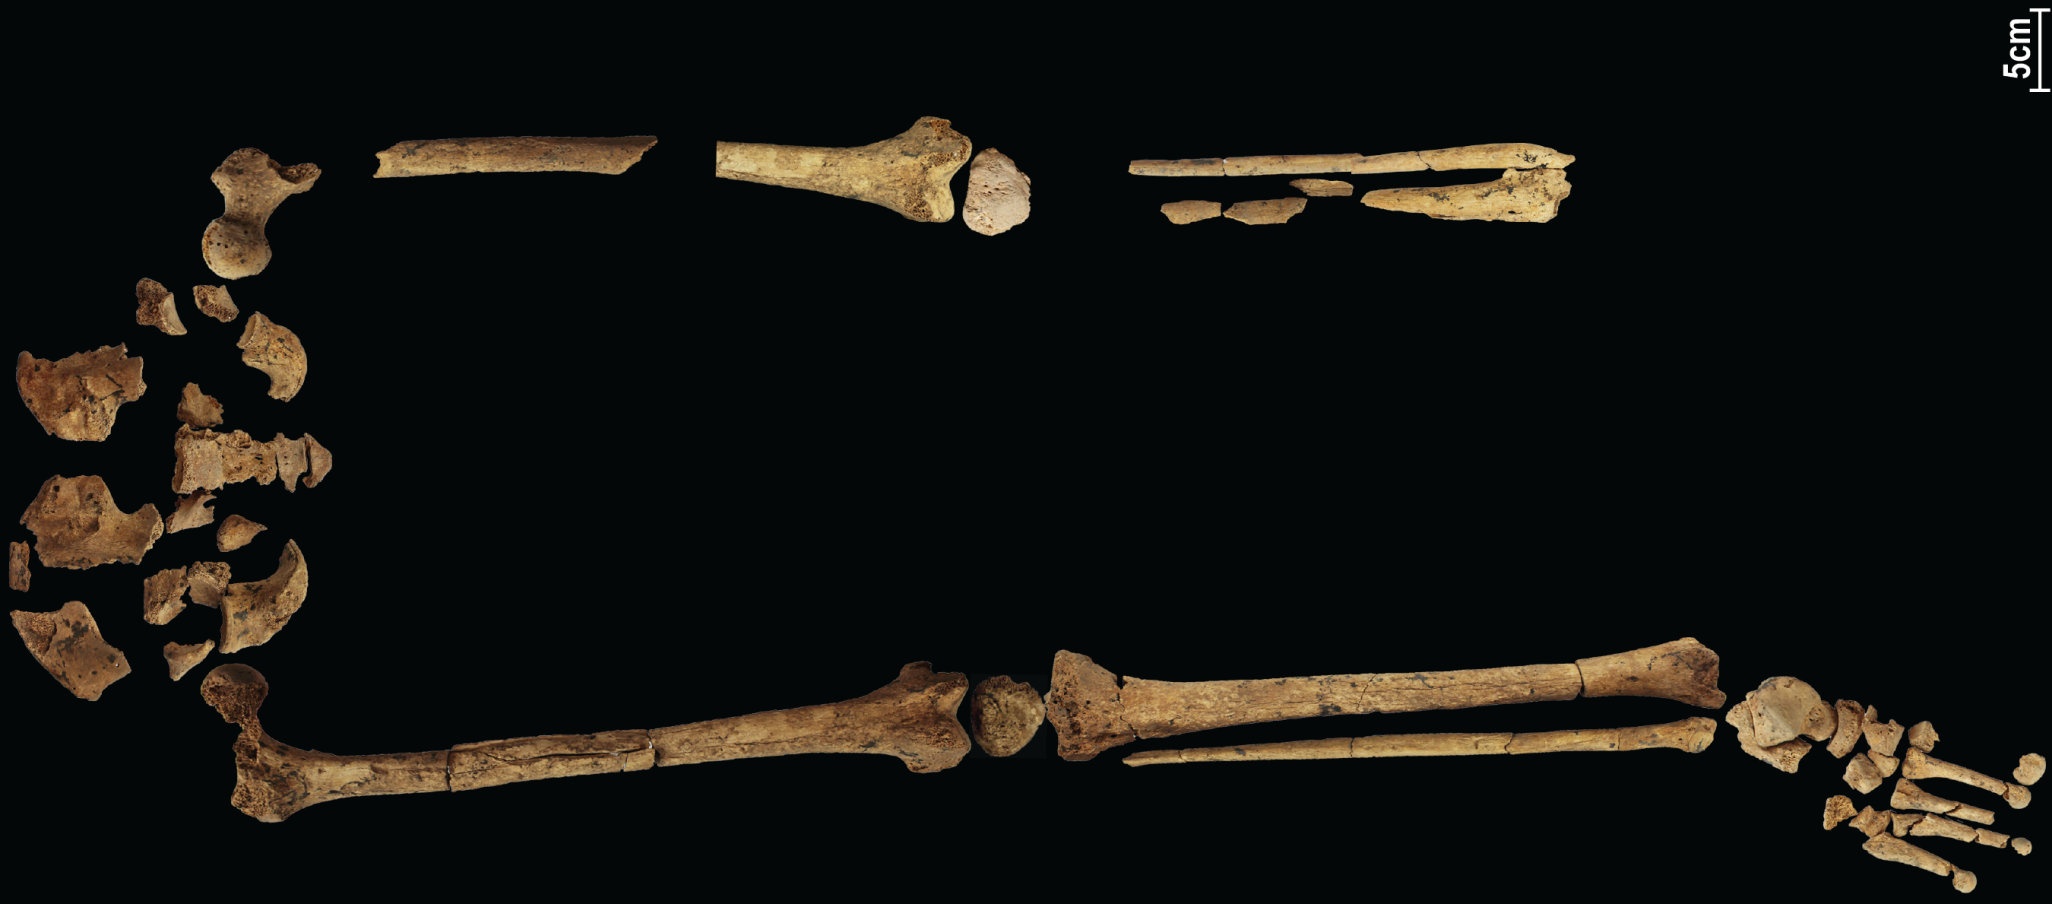 Bilinen en eski karmaşık ameliyatı gösteren 31,000 yıllık bir iskelet tarihi yeniden yazabilir! 4